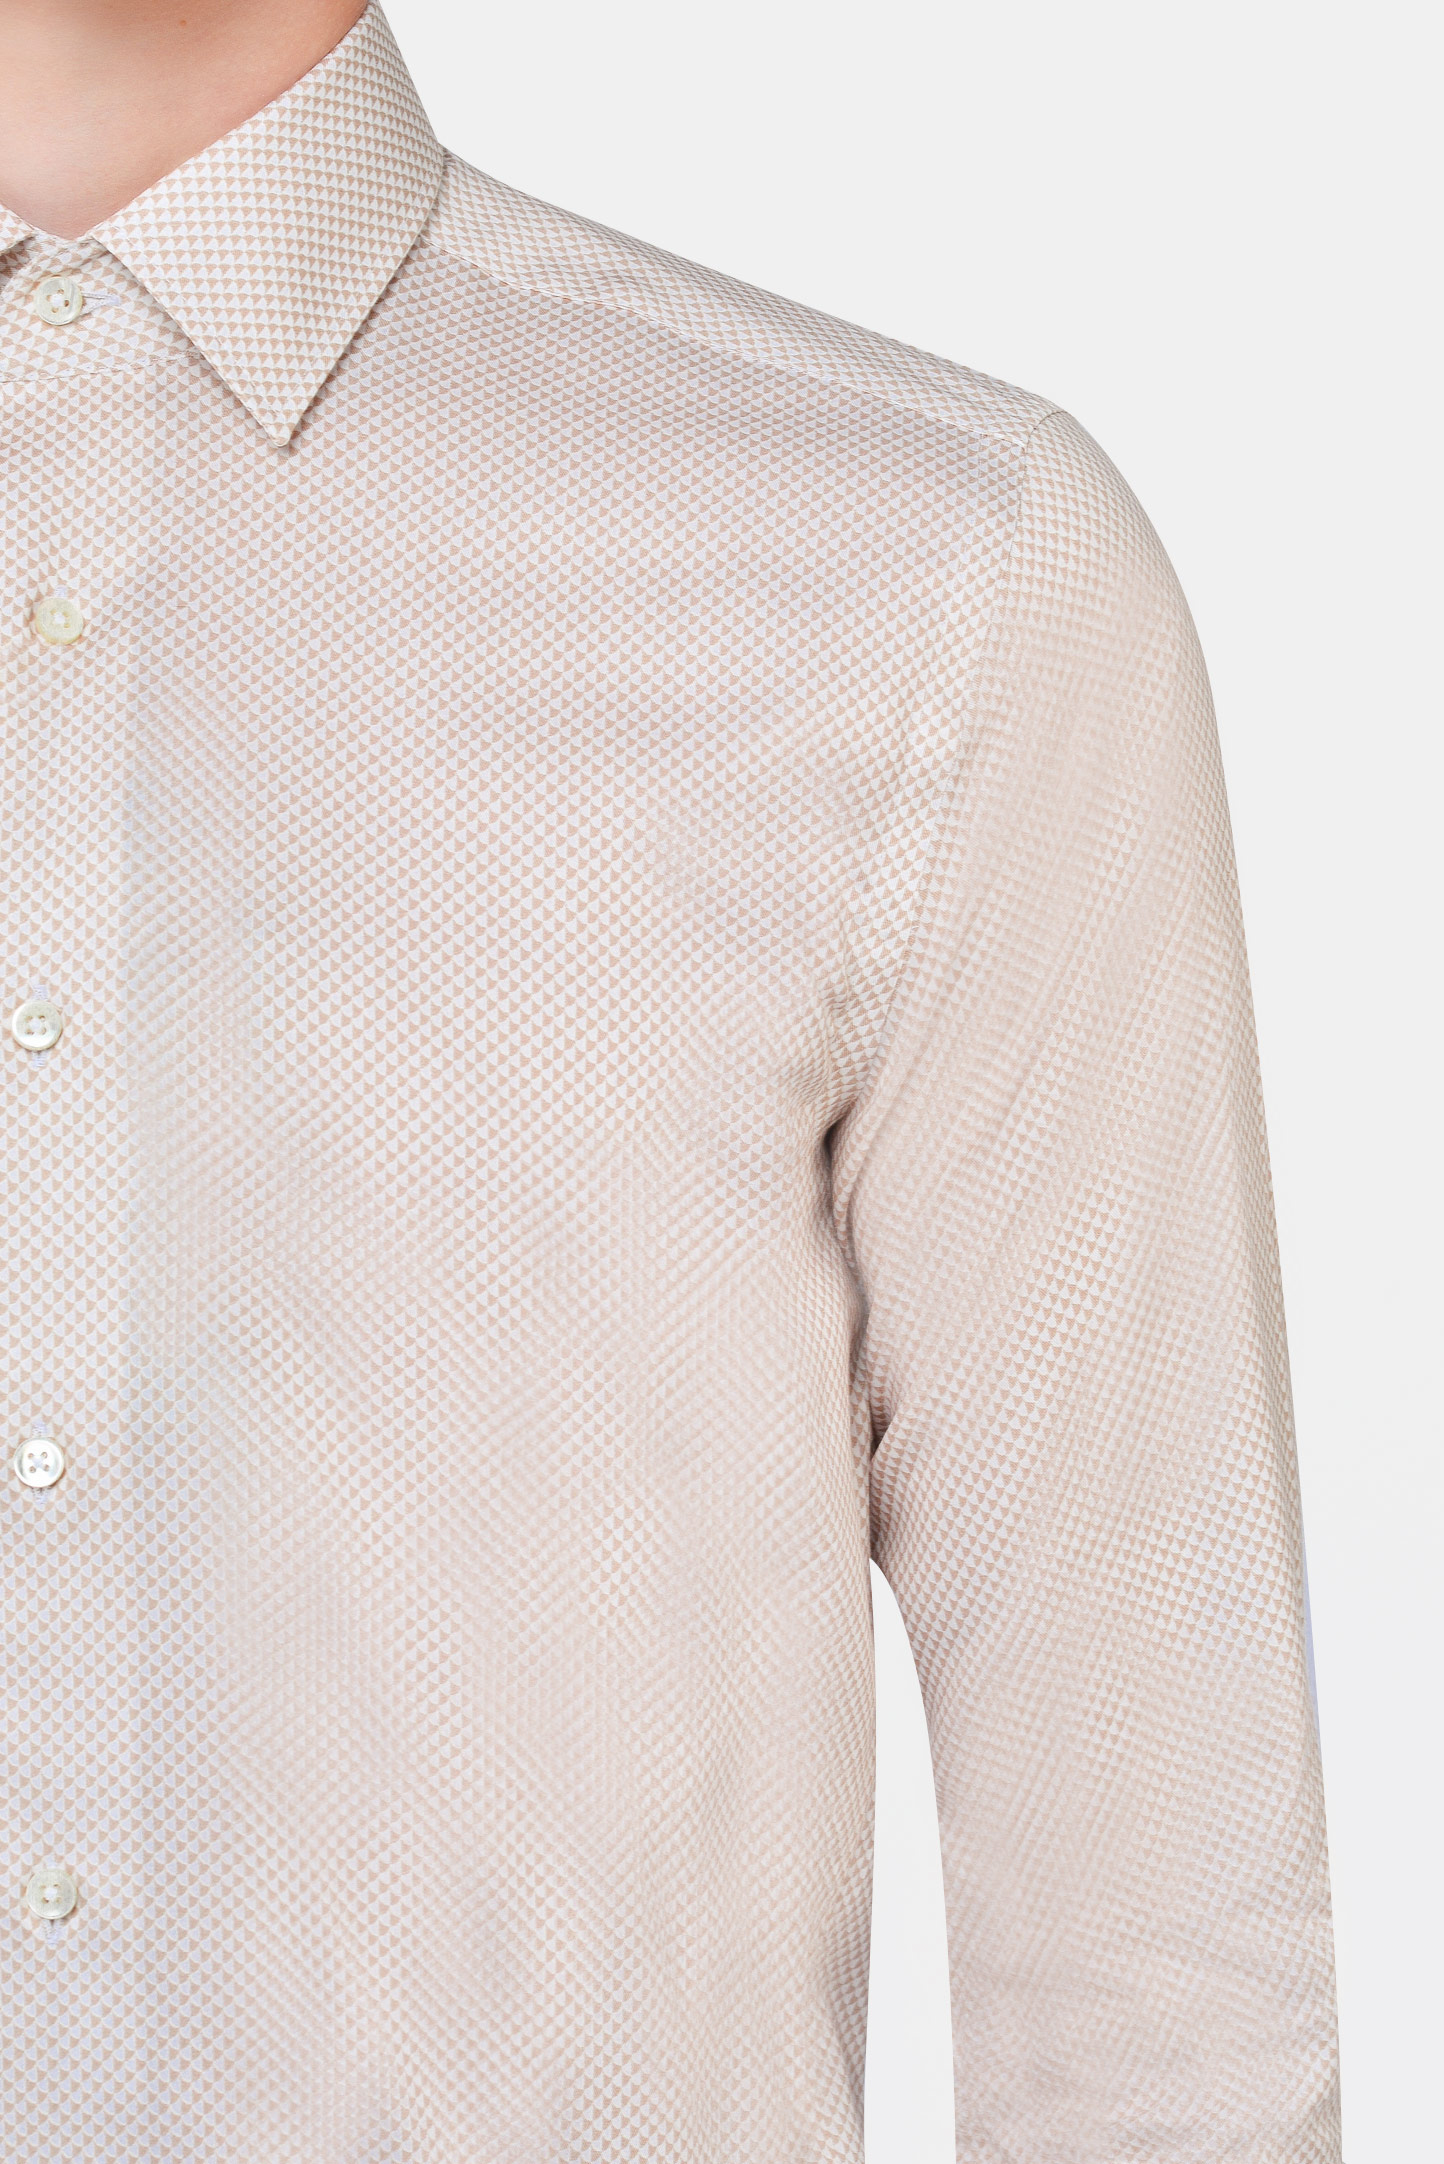 Рубашка CANALI GR02285/701, цвет: Бежевый, Мужской